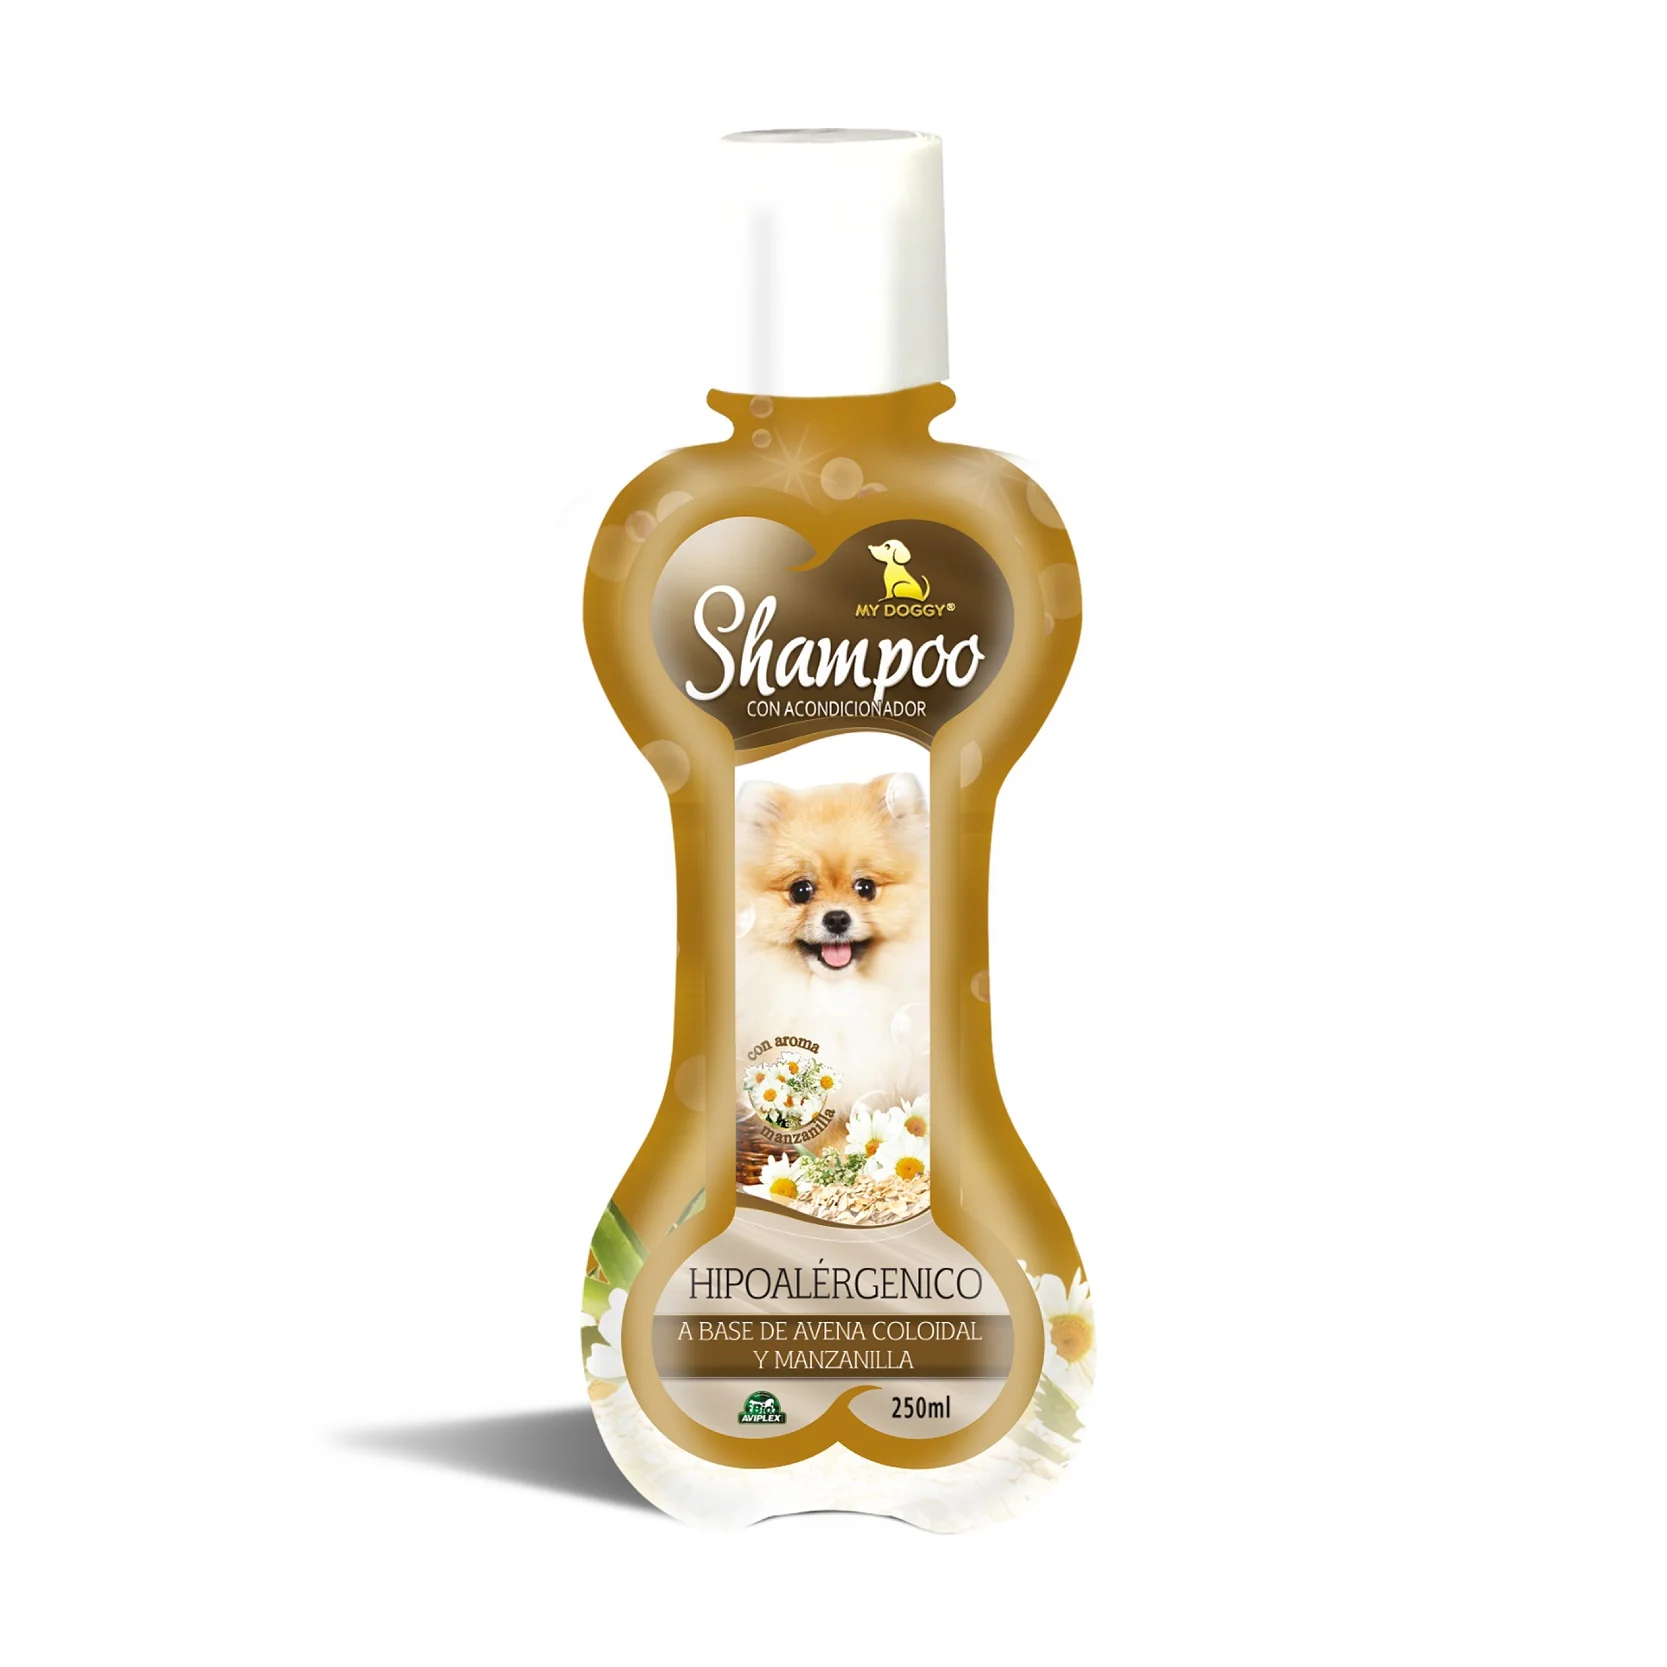 shampoo mydoggy hipoalergenico